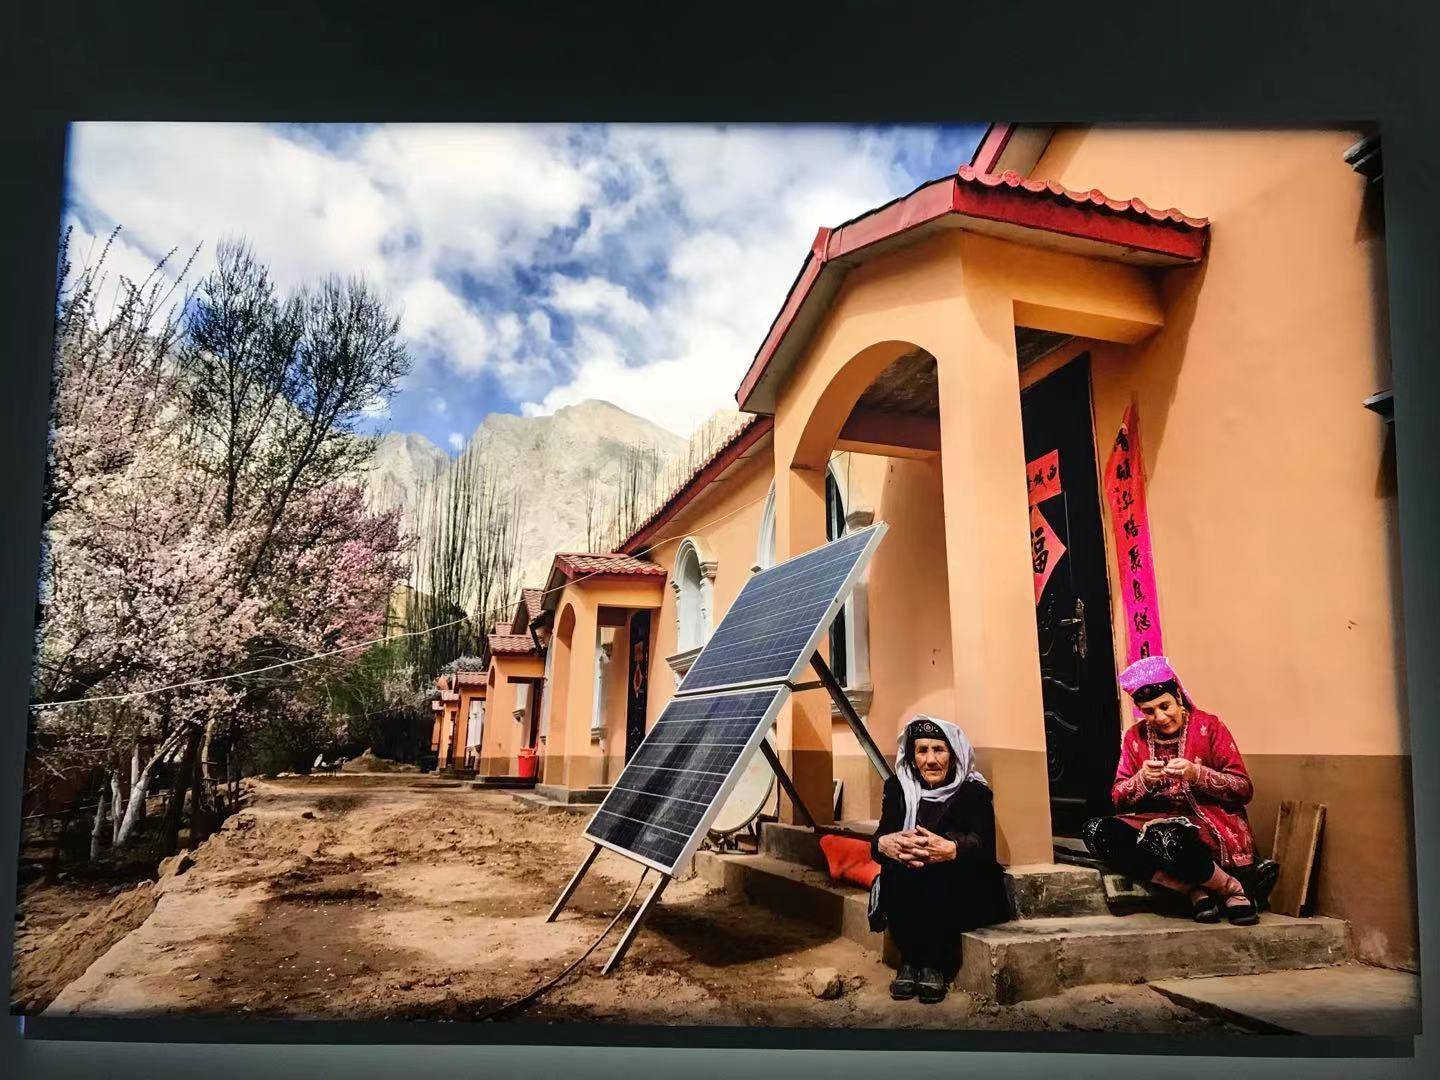 2019年4月2日,新疆塔什库尔干县大同乡,村民在新建房屋前